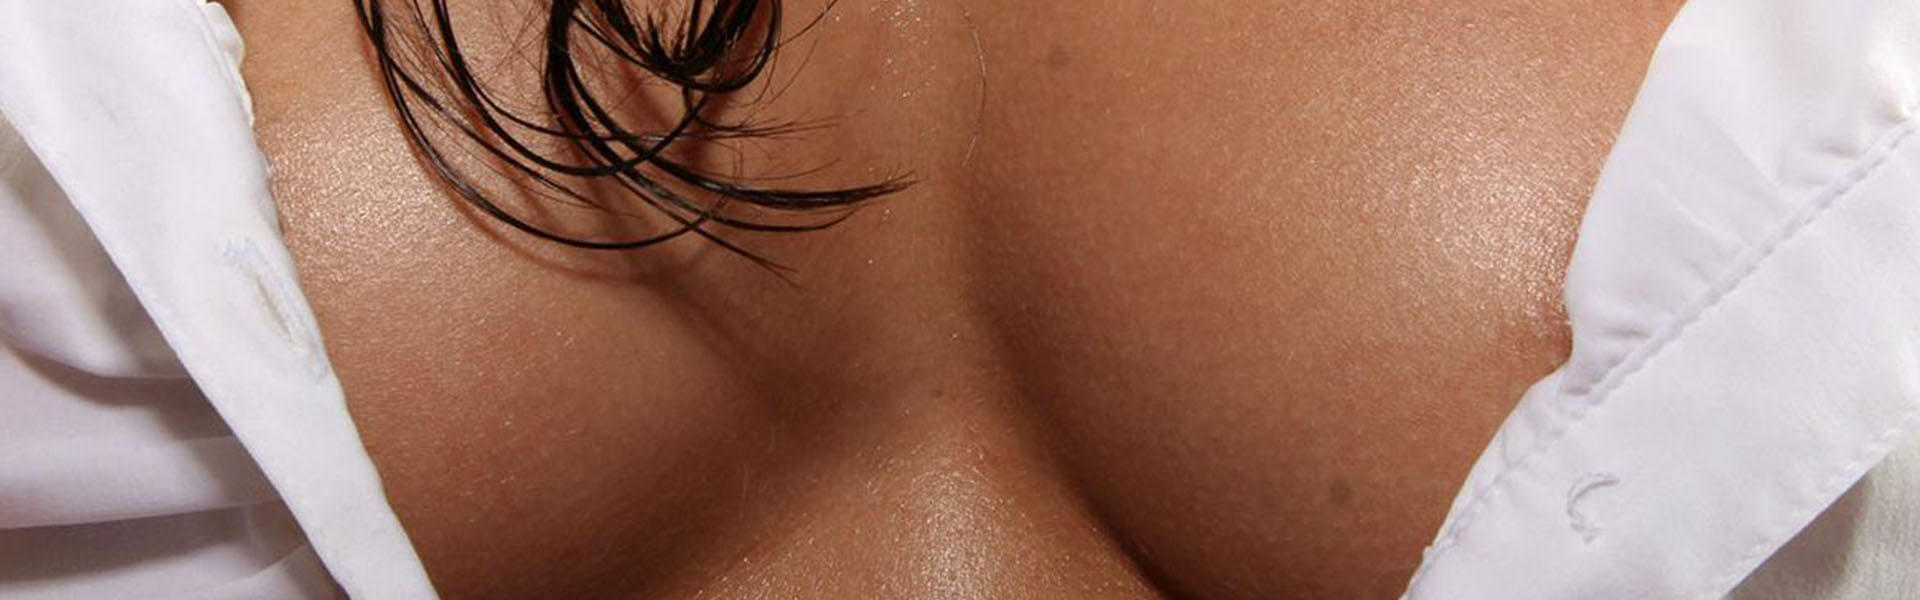 волосы между груди у женщин (120) фото